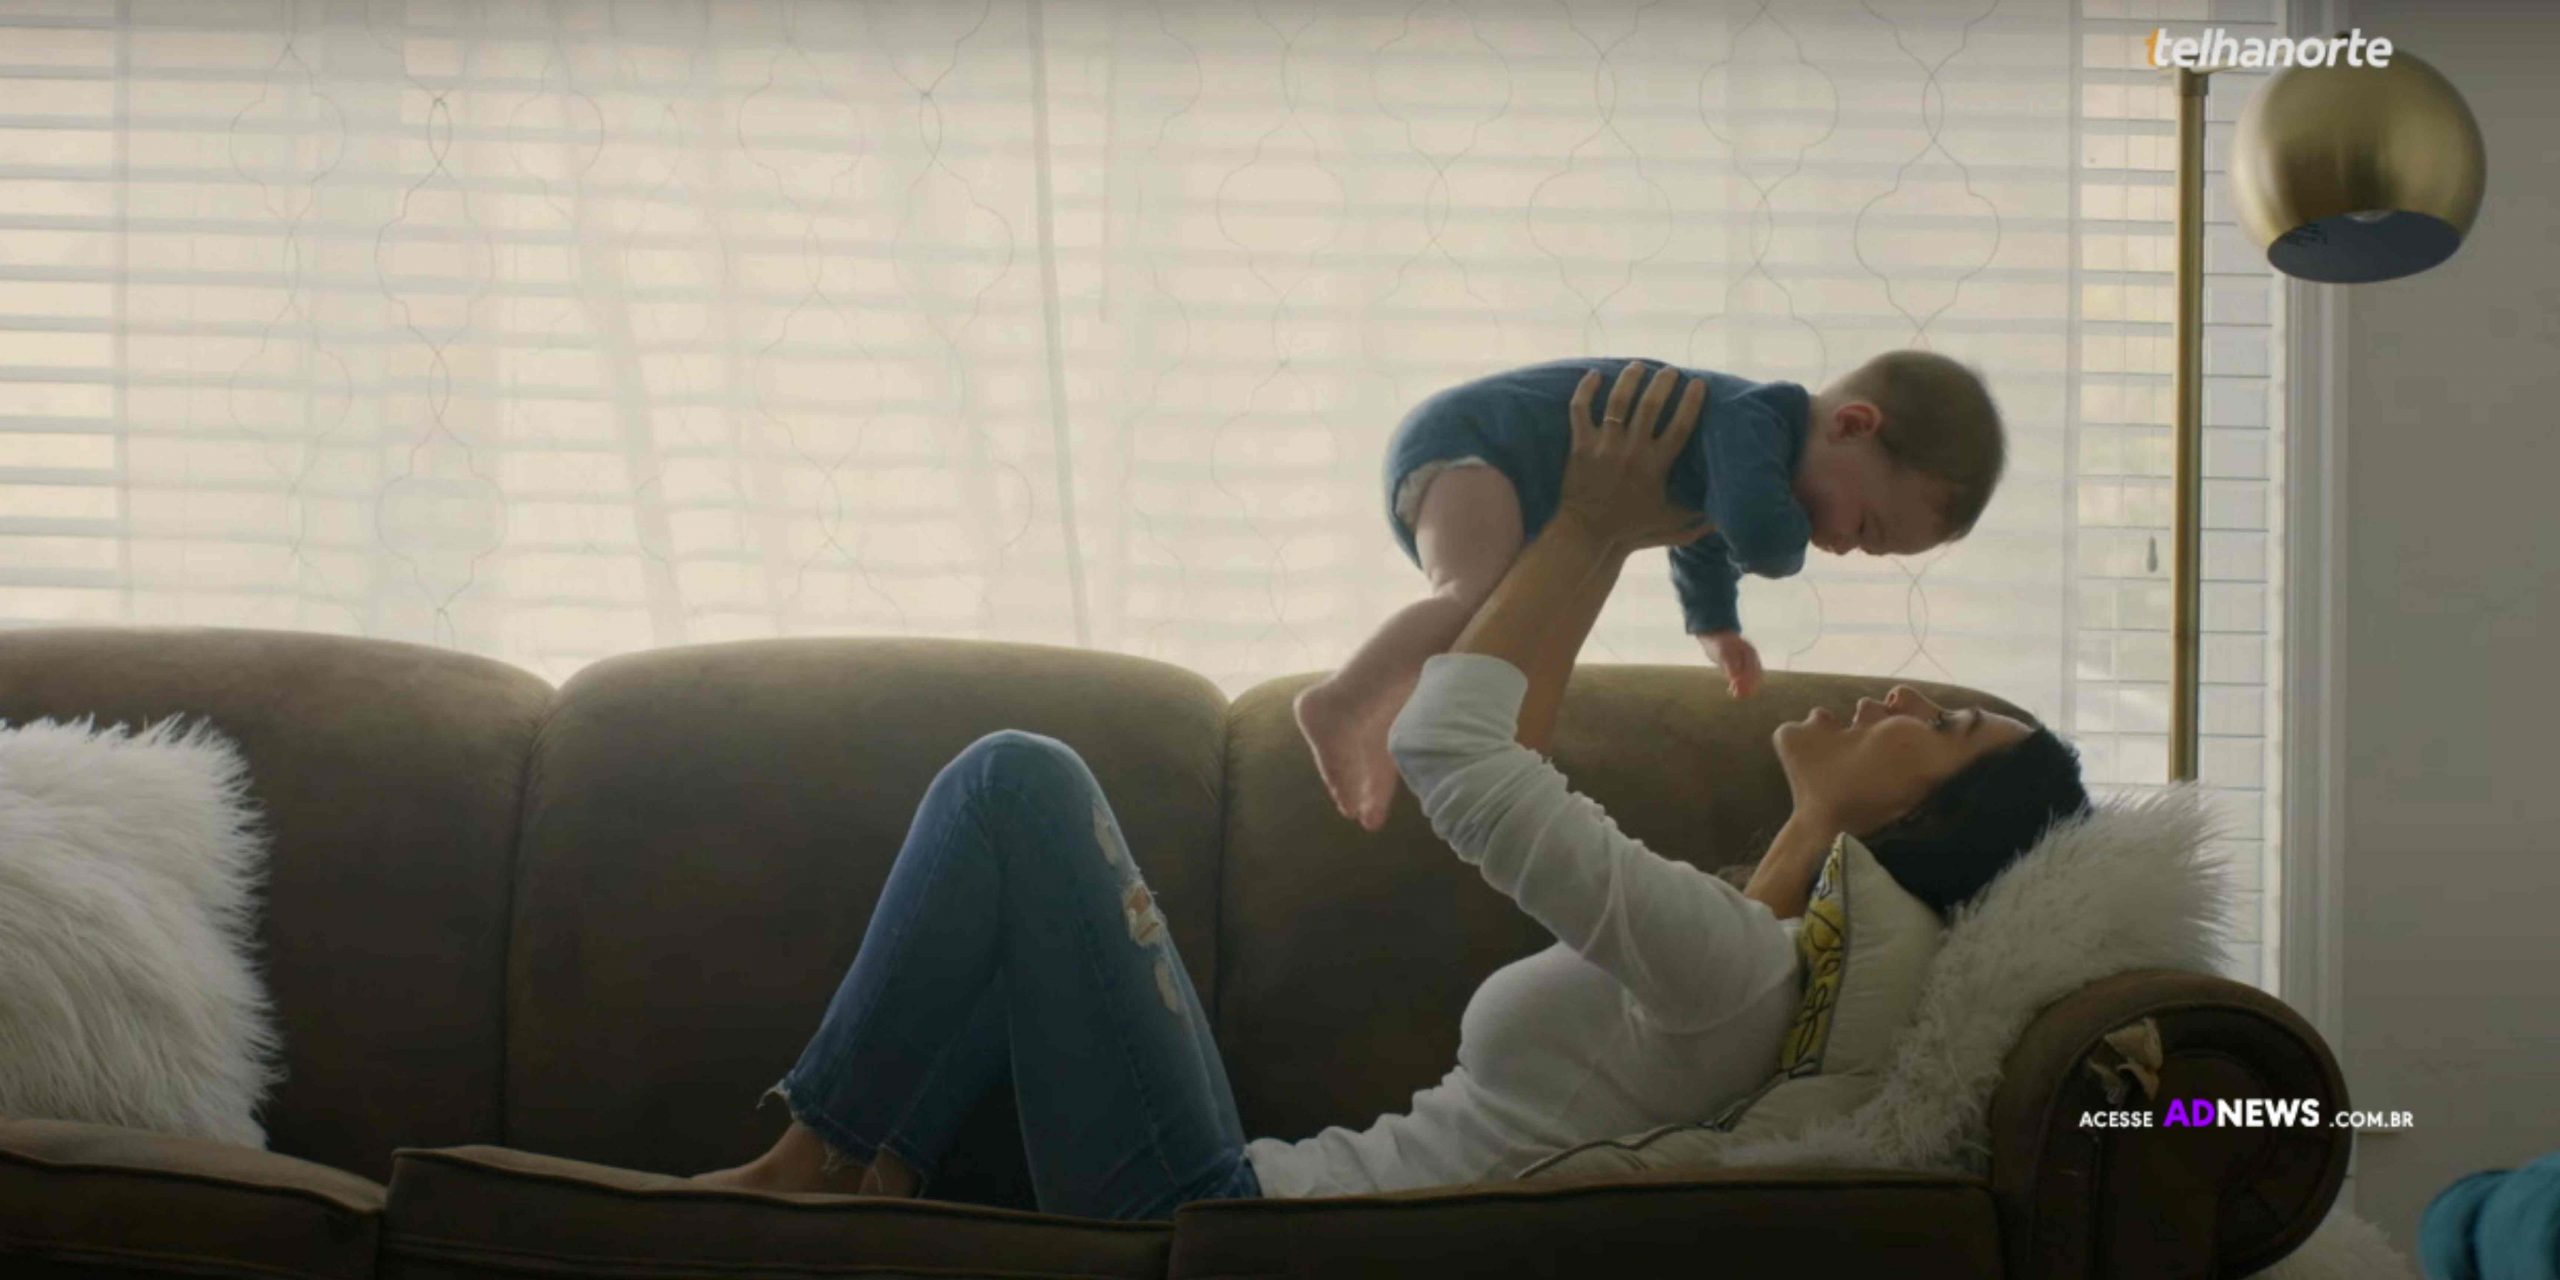 Campanha de Telhanorte mostra relação de mãe e filhos a partir do olhar da casa